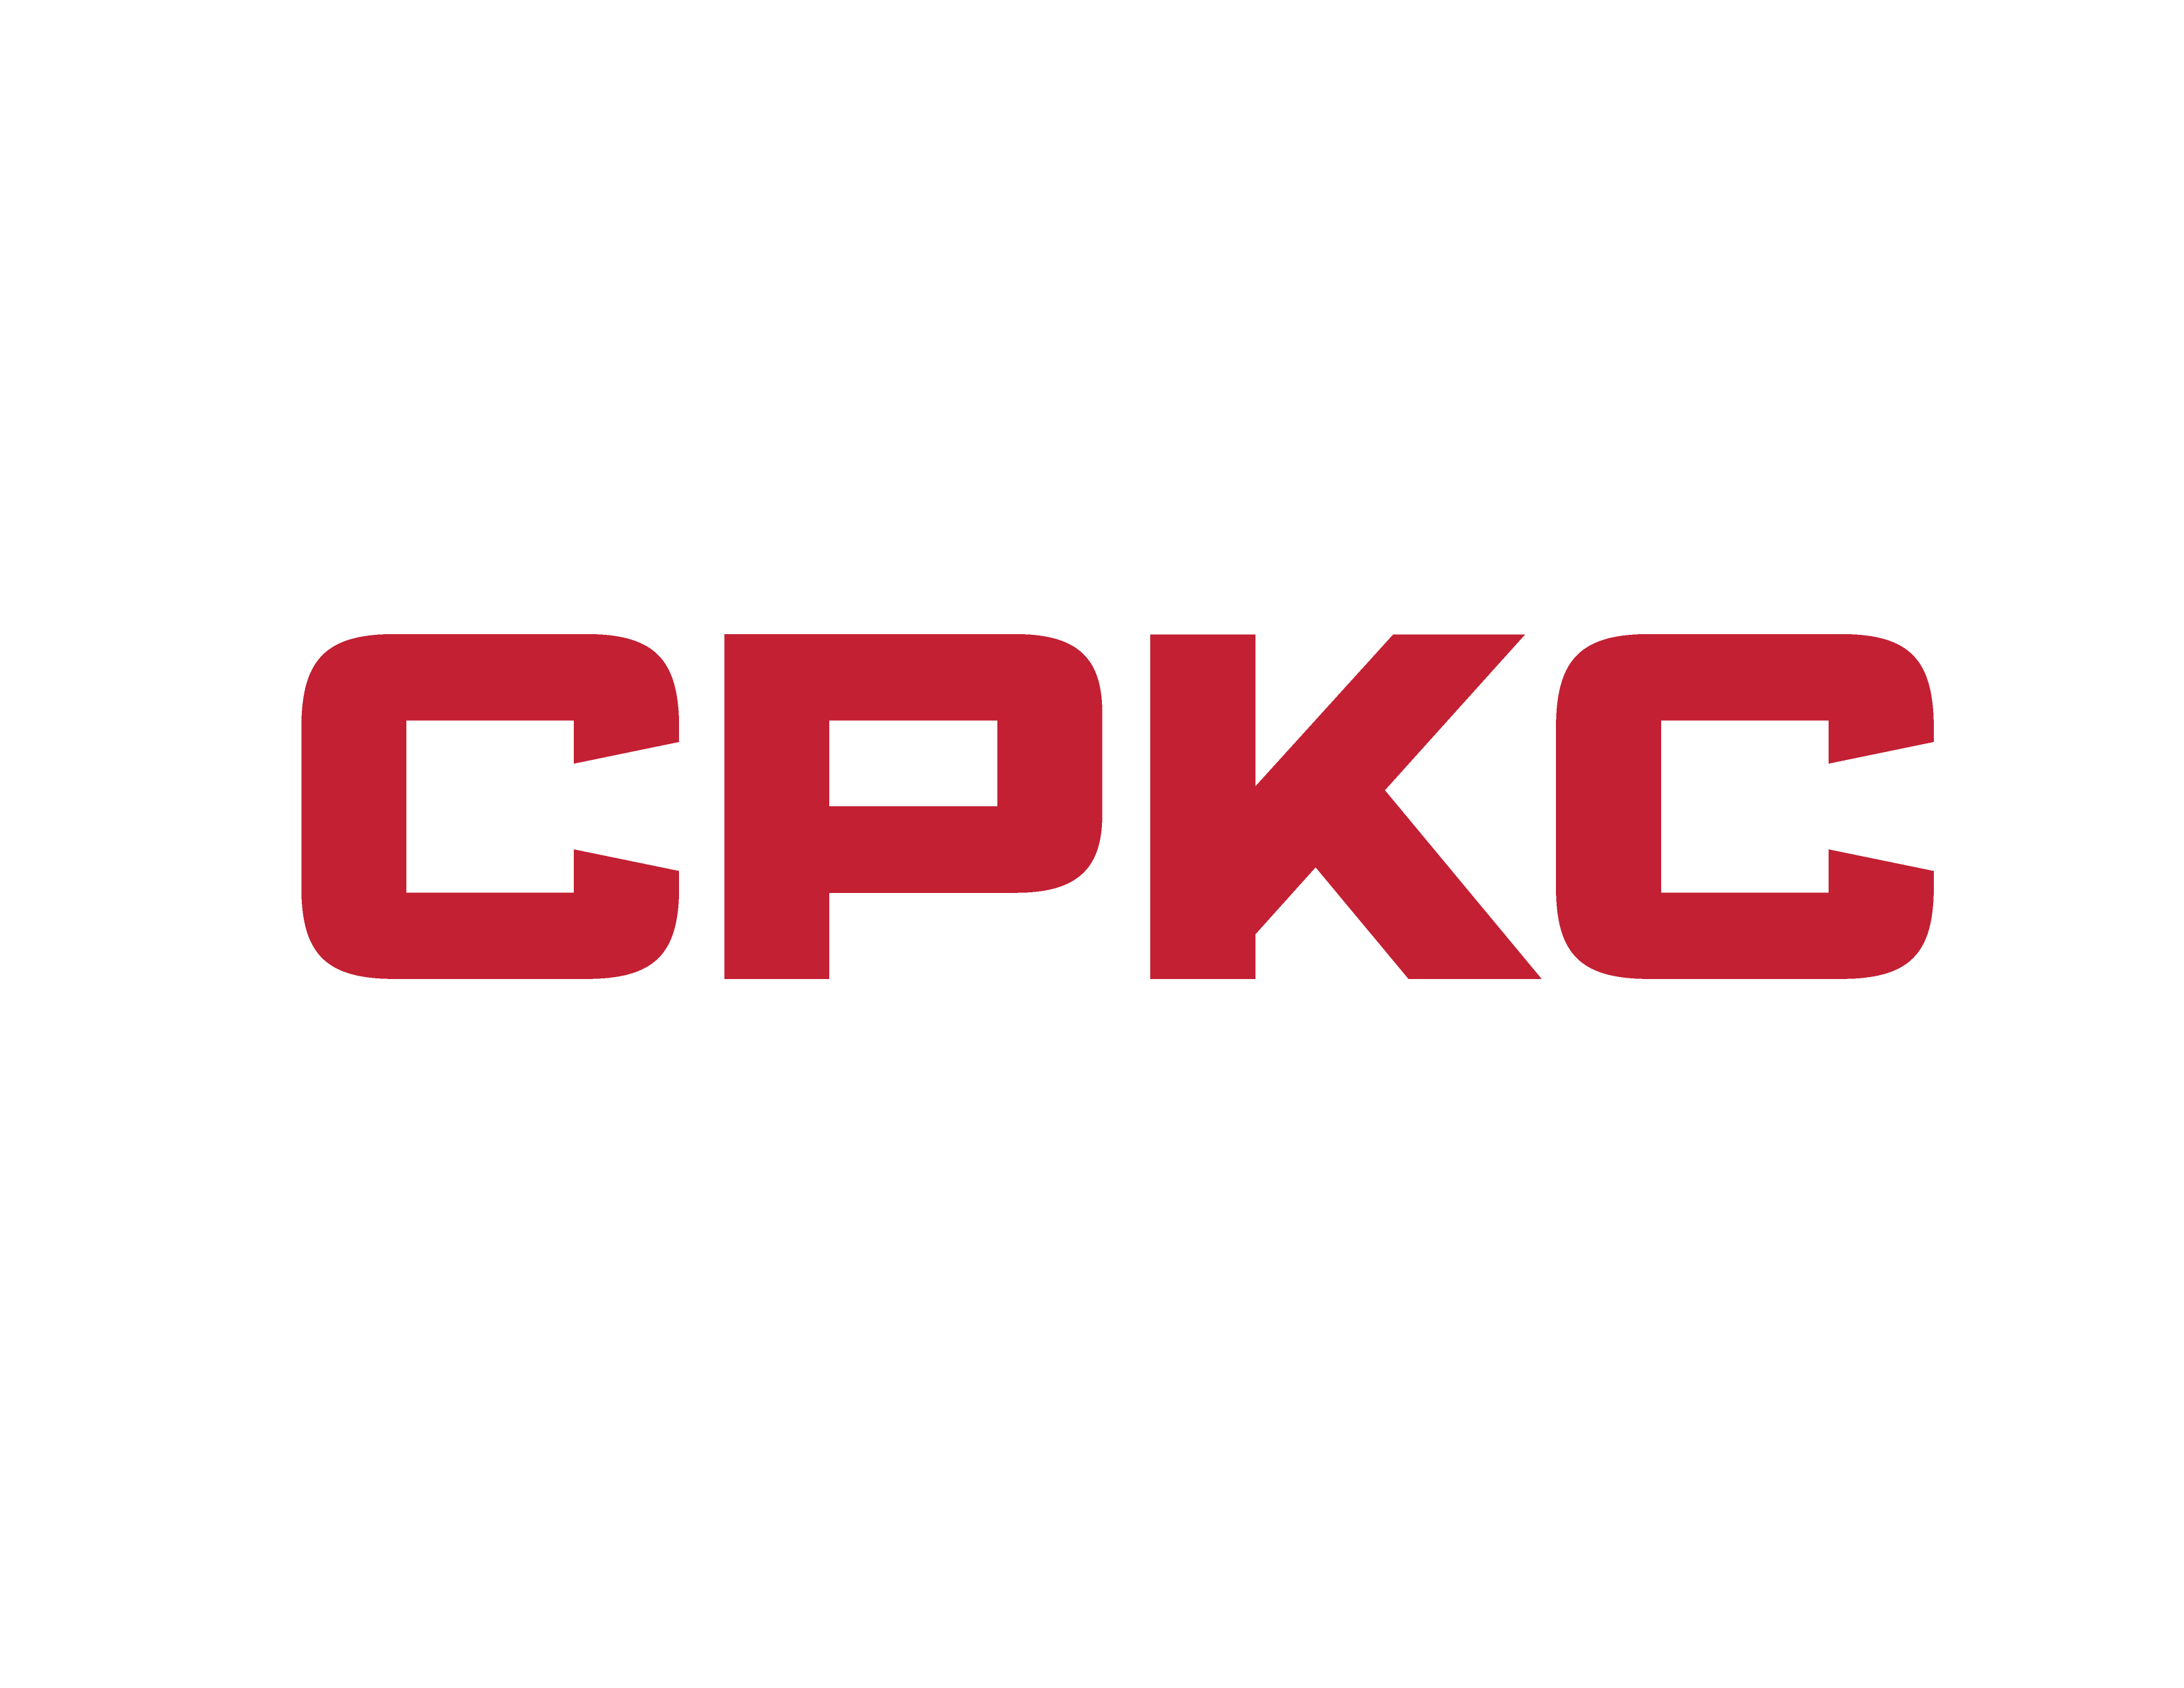 CPKC